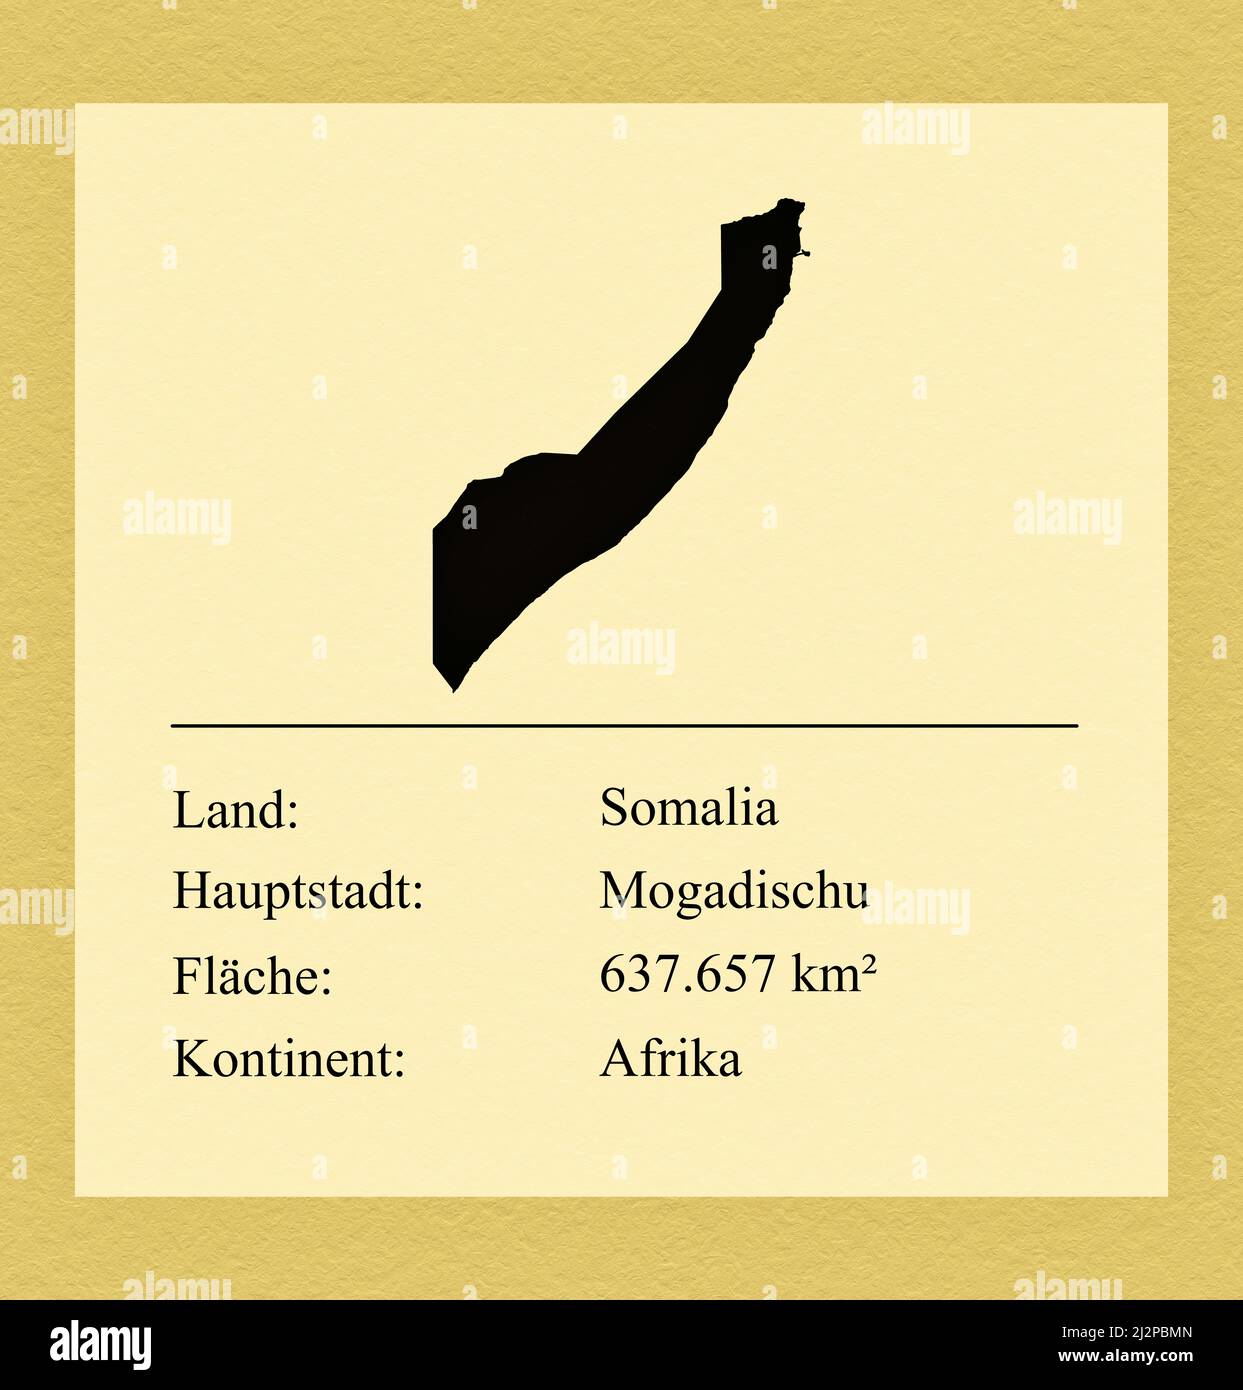 Umrisse des Landes Somalia, darunter ein kleiner Steckbrief mit Ländernamen, Hauptstadt, Fläche und Kontinent Foto de stock